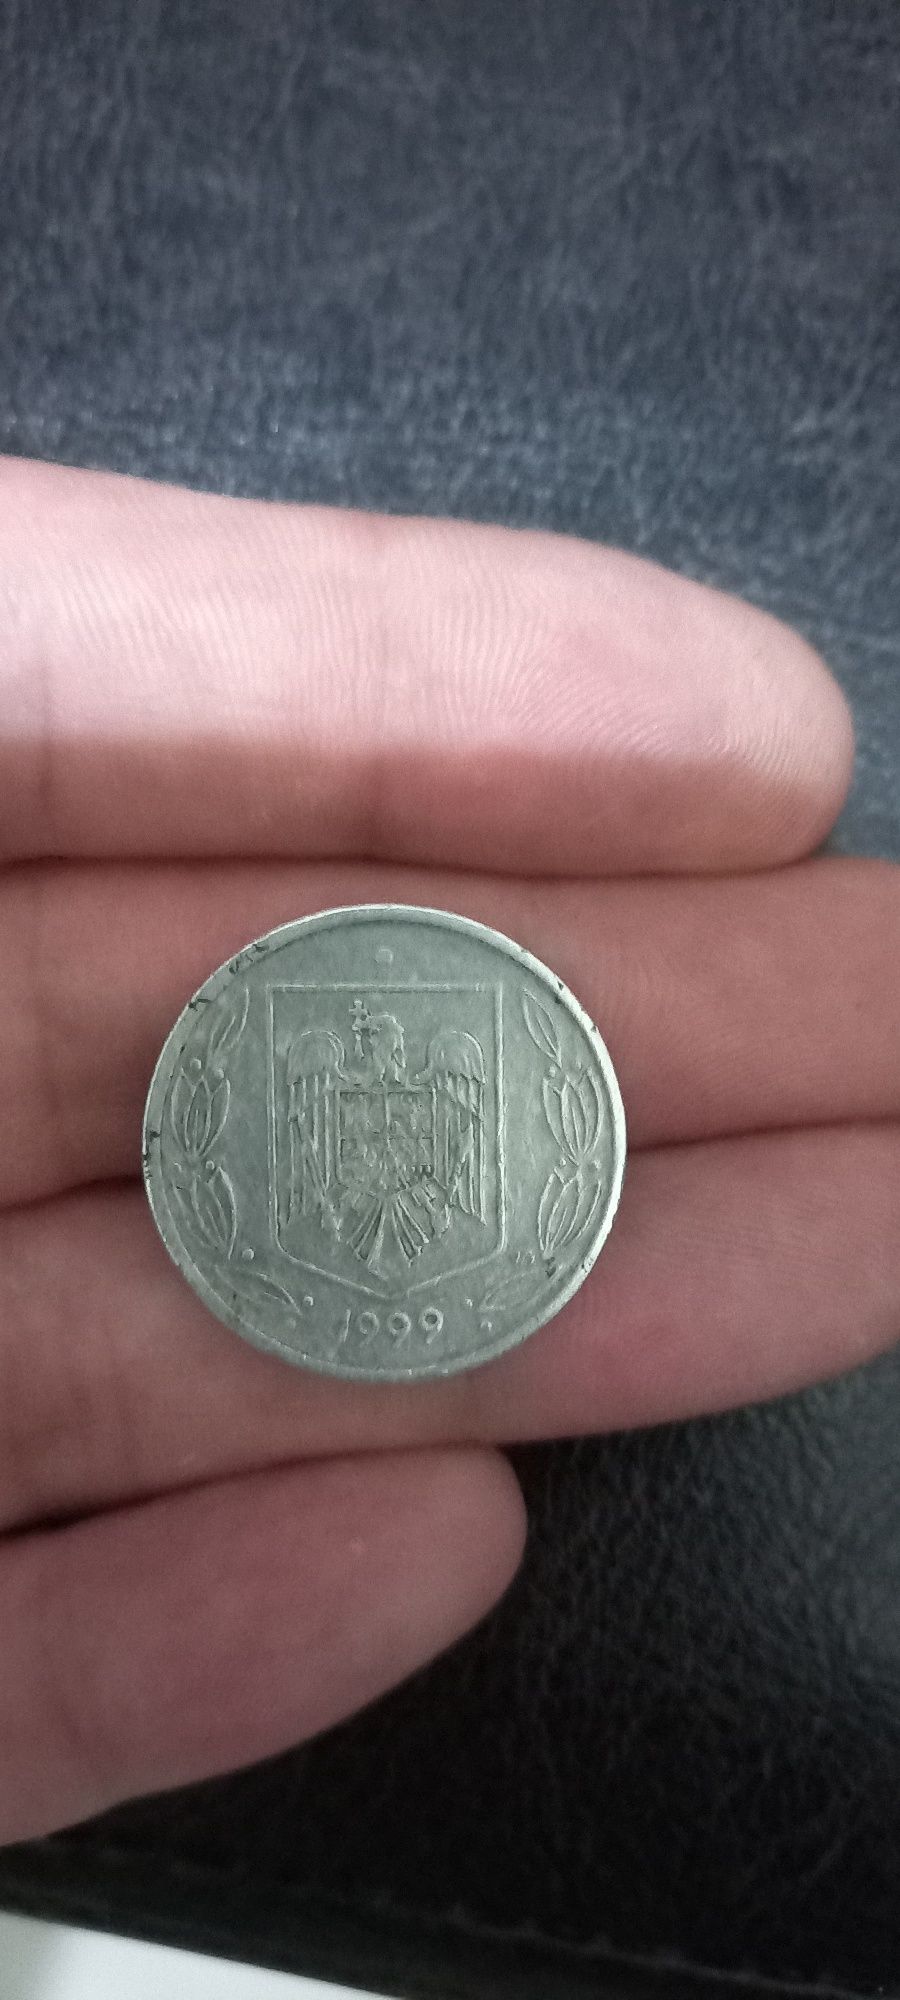 Vand Moneda 500 lei din anul 1999